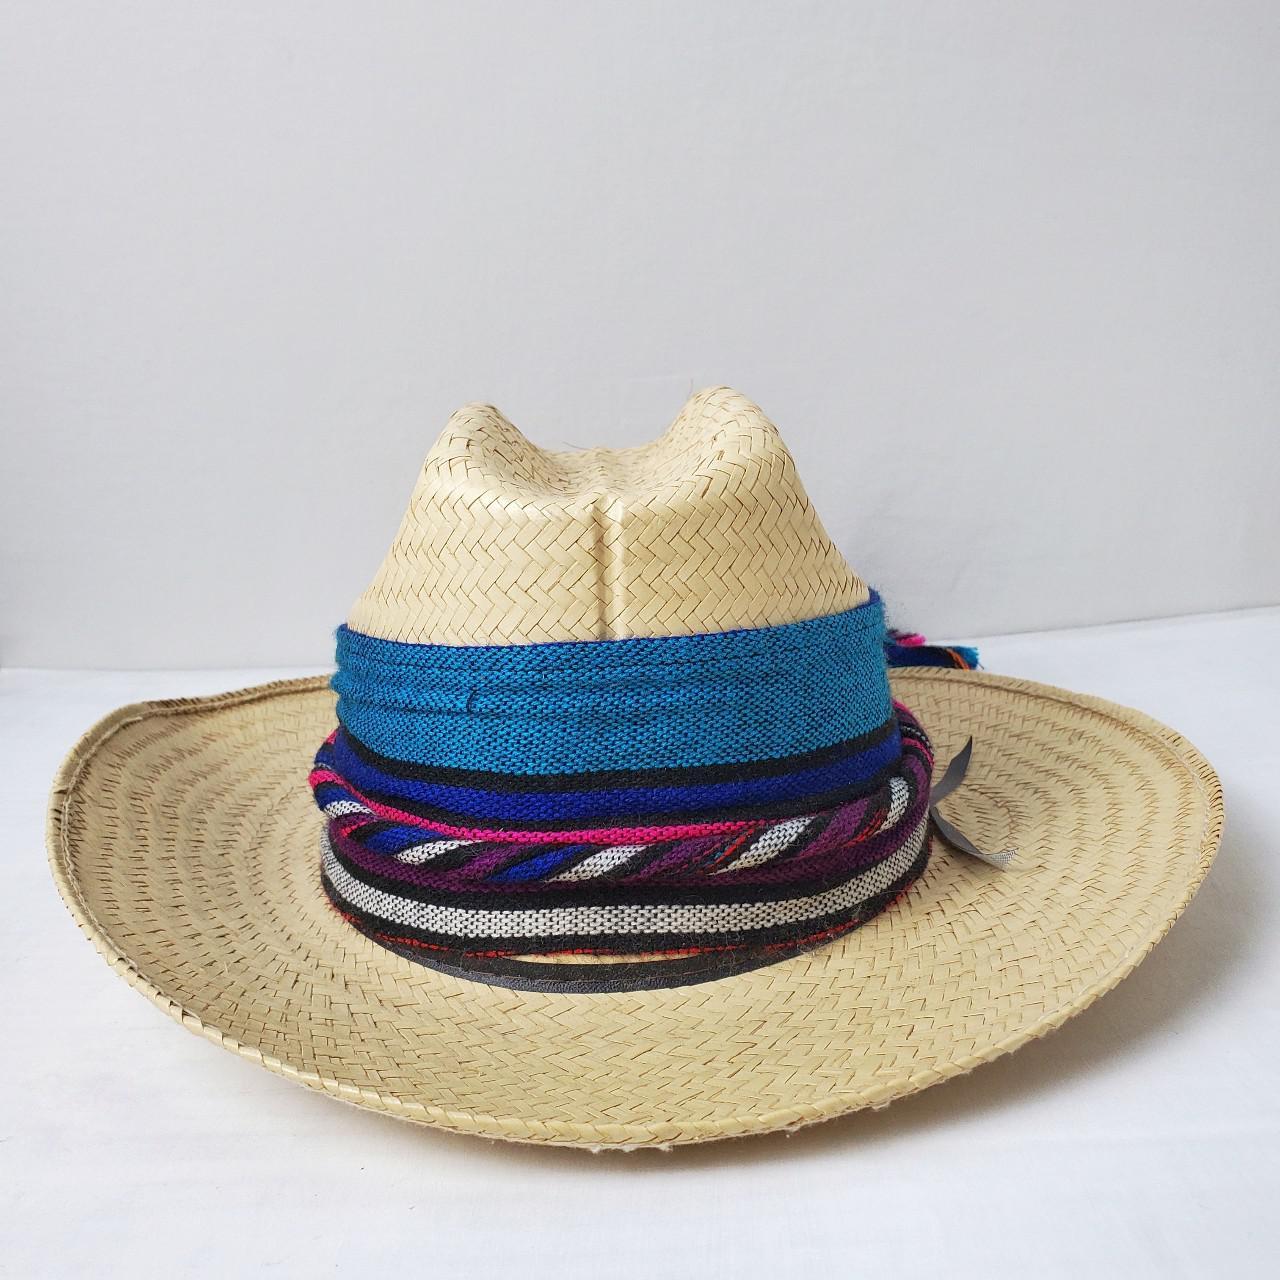 Product Image 2 - Vintage western straw hat

🏷️ BOGO